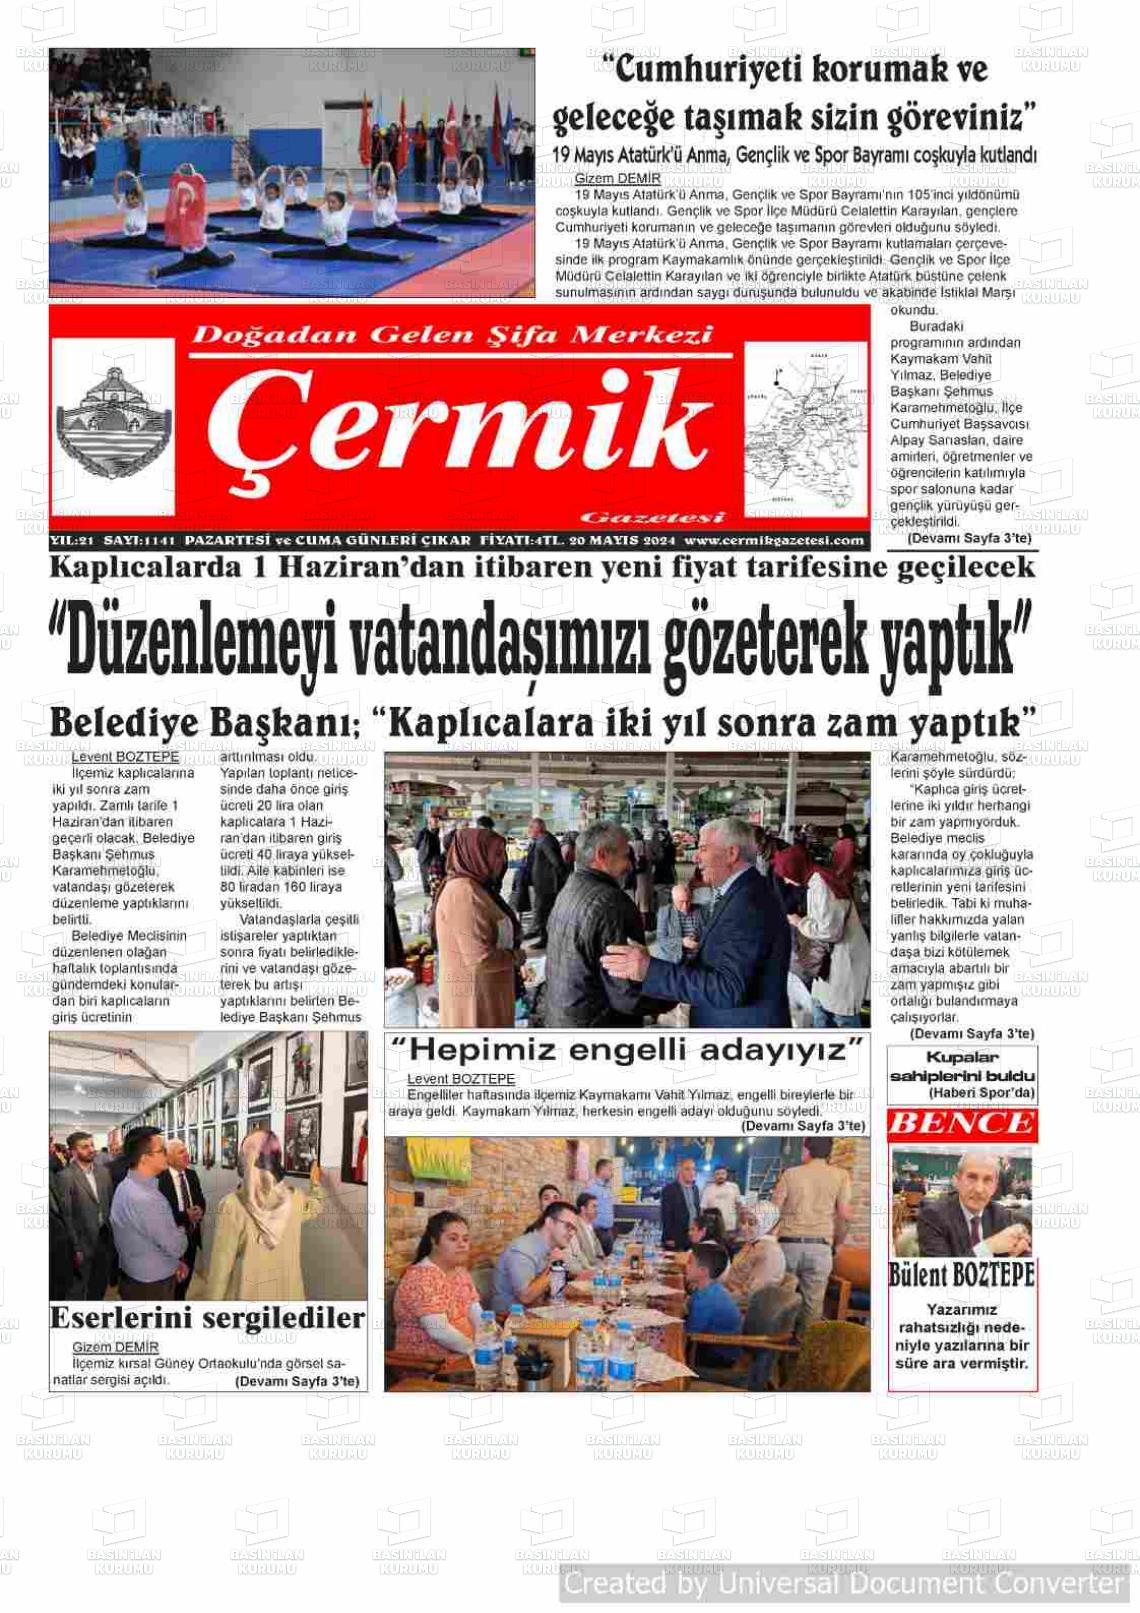 ÇERMİK Gazetesi